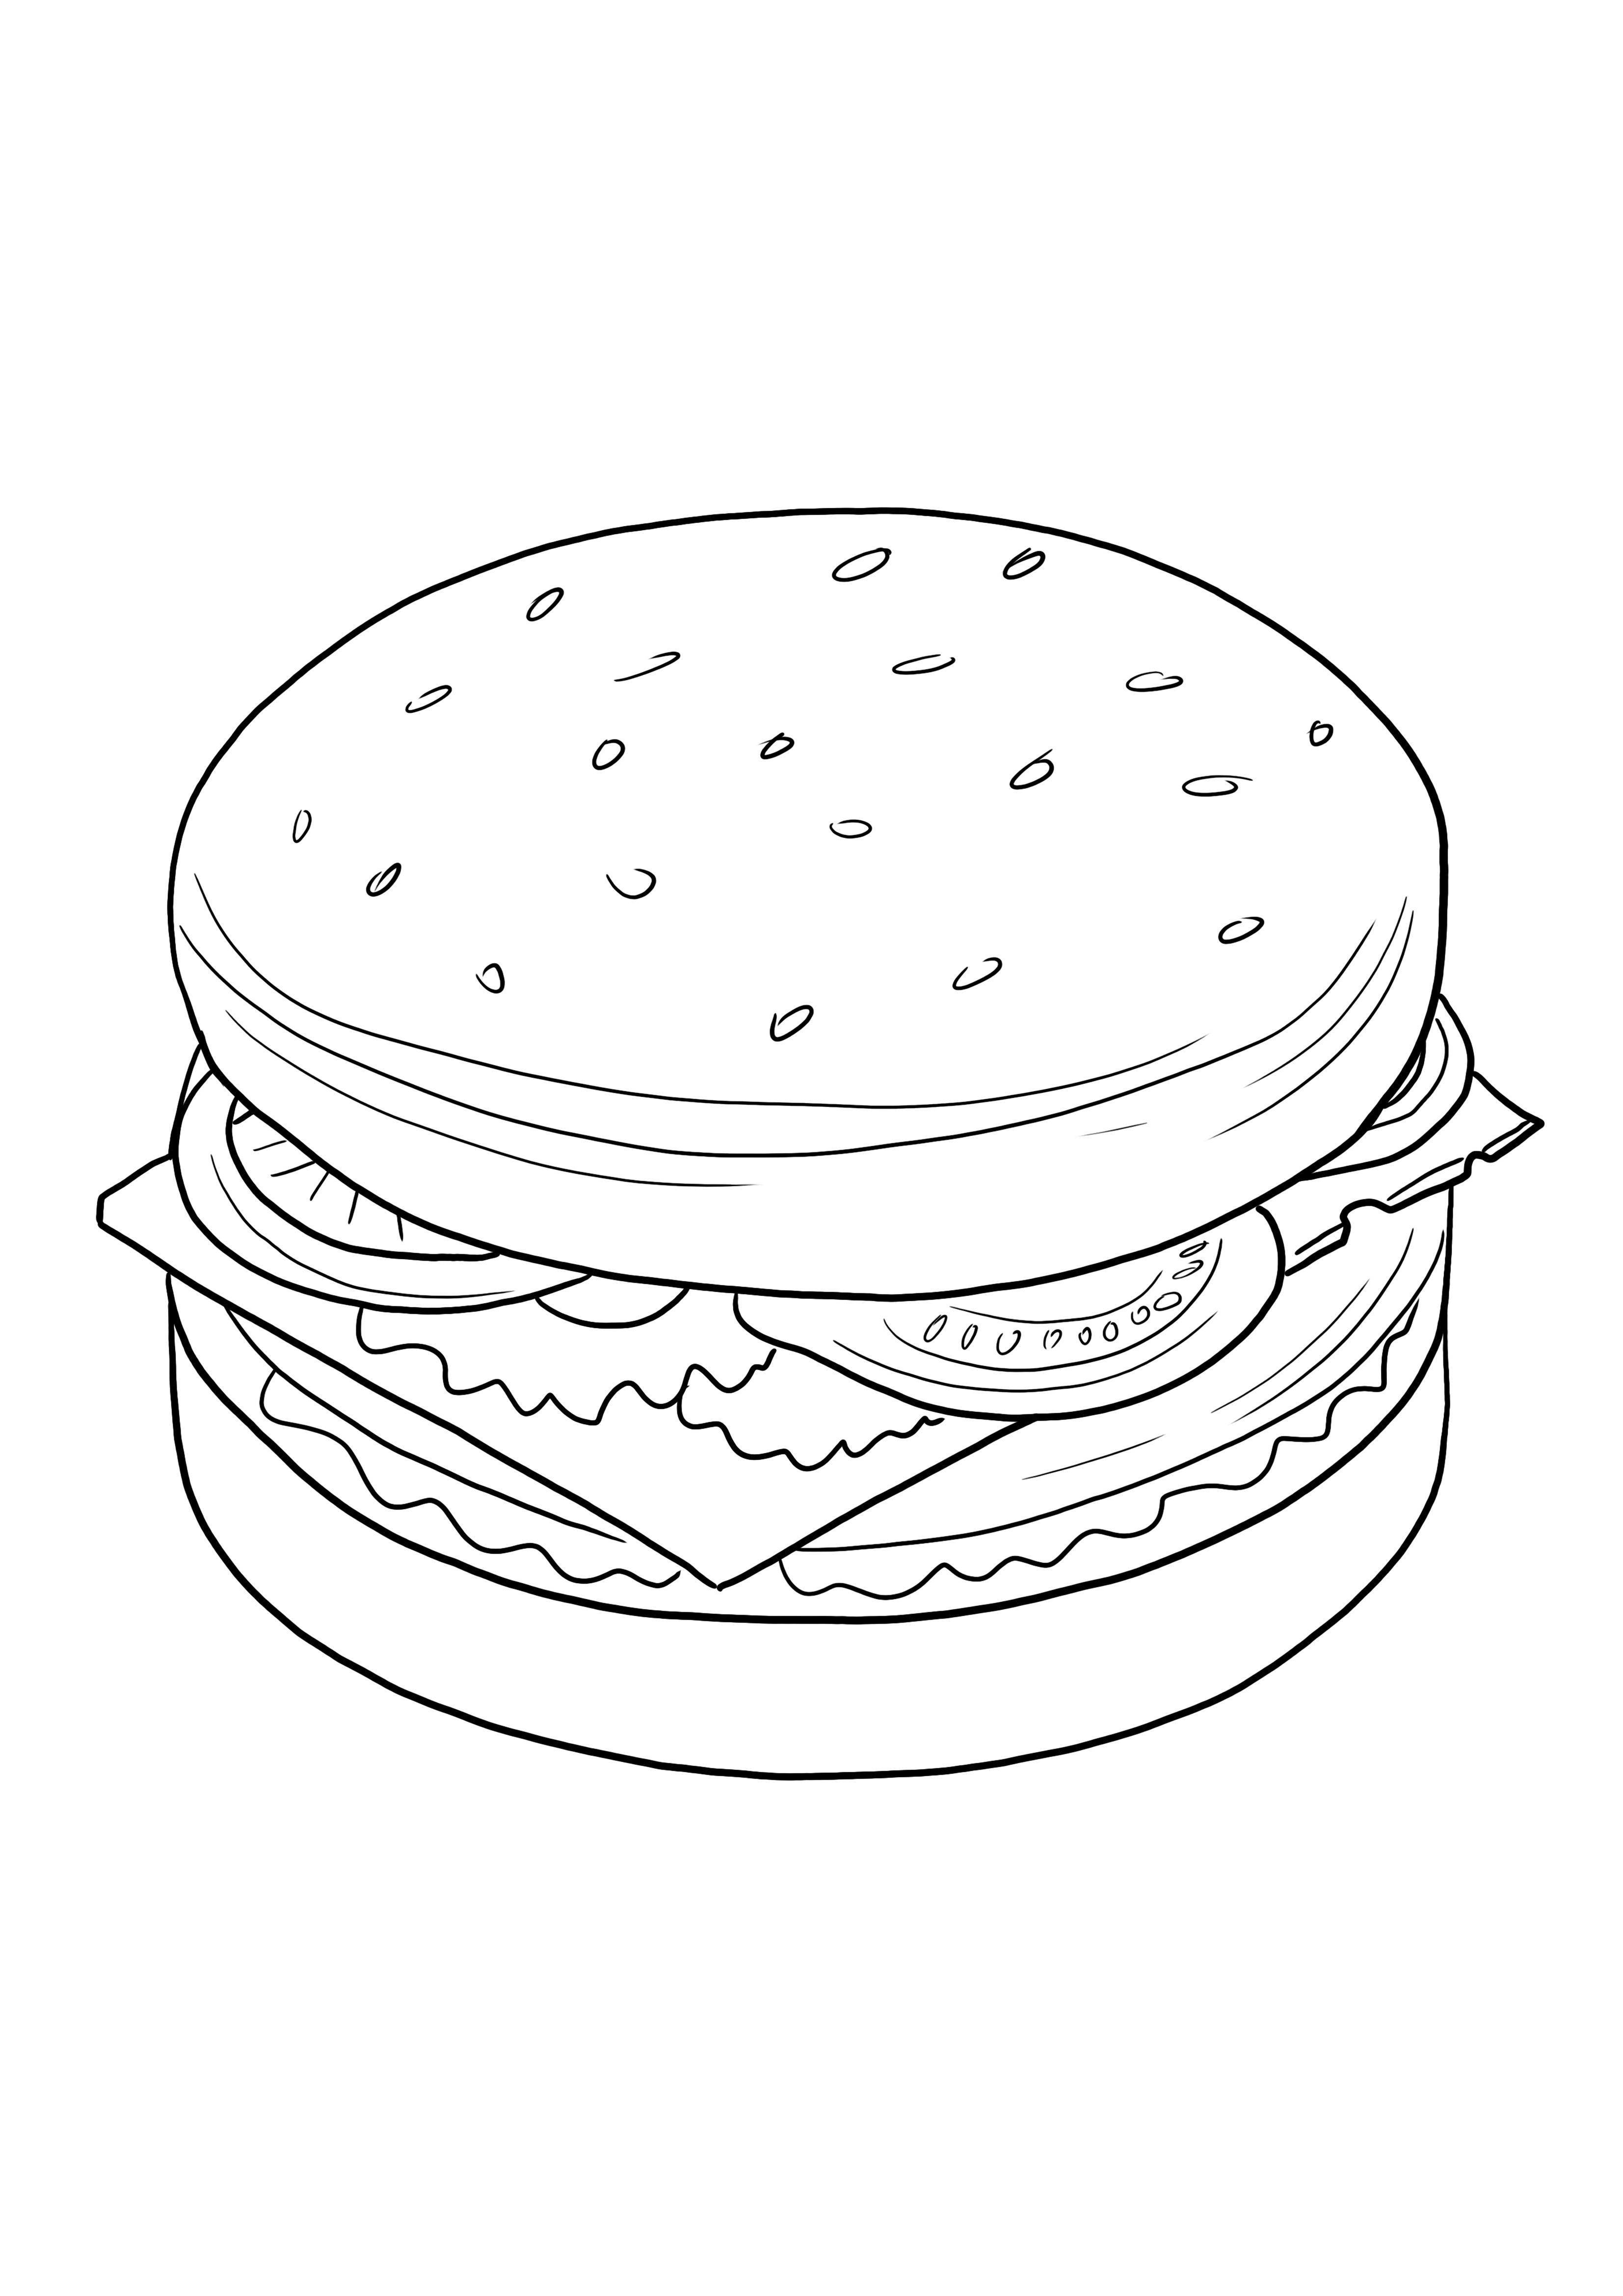 Cheeseburger gratis untuk mencetak dan mewarnai gambar untuk anak-anak dari segala usia